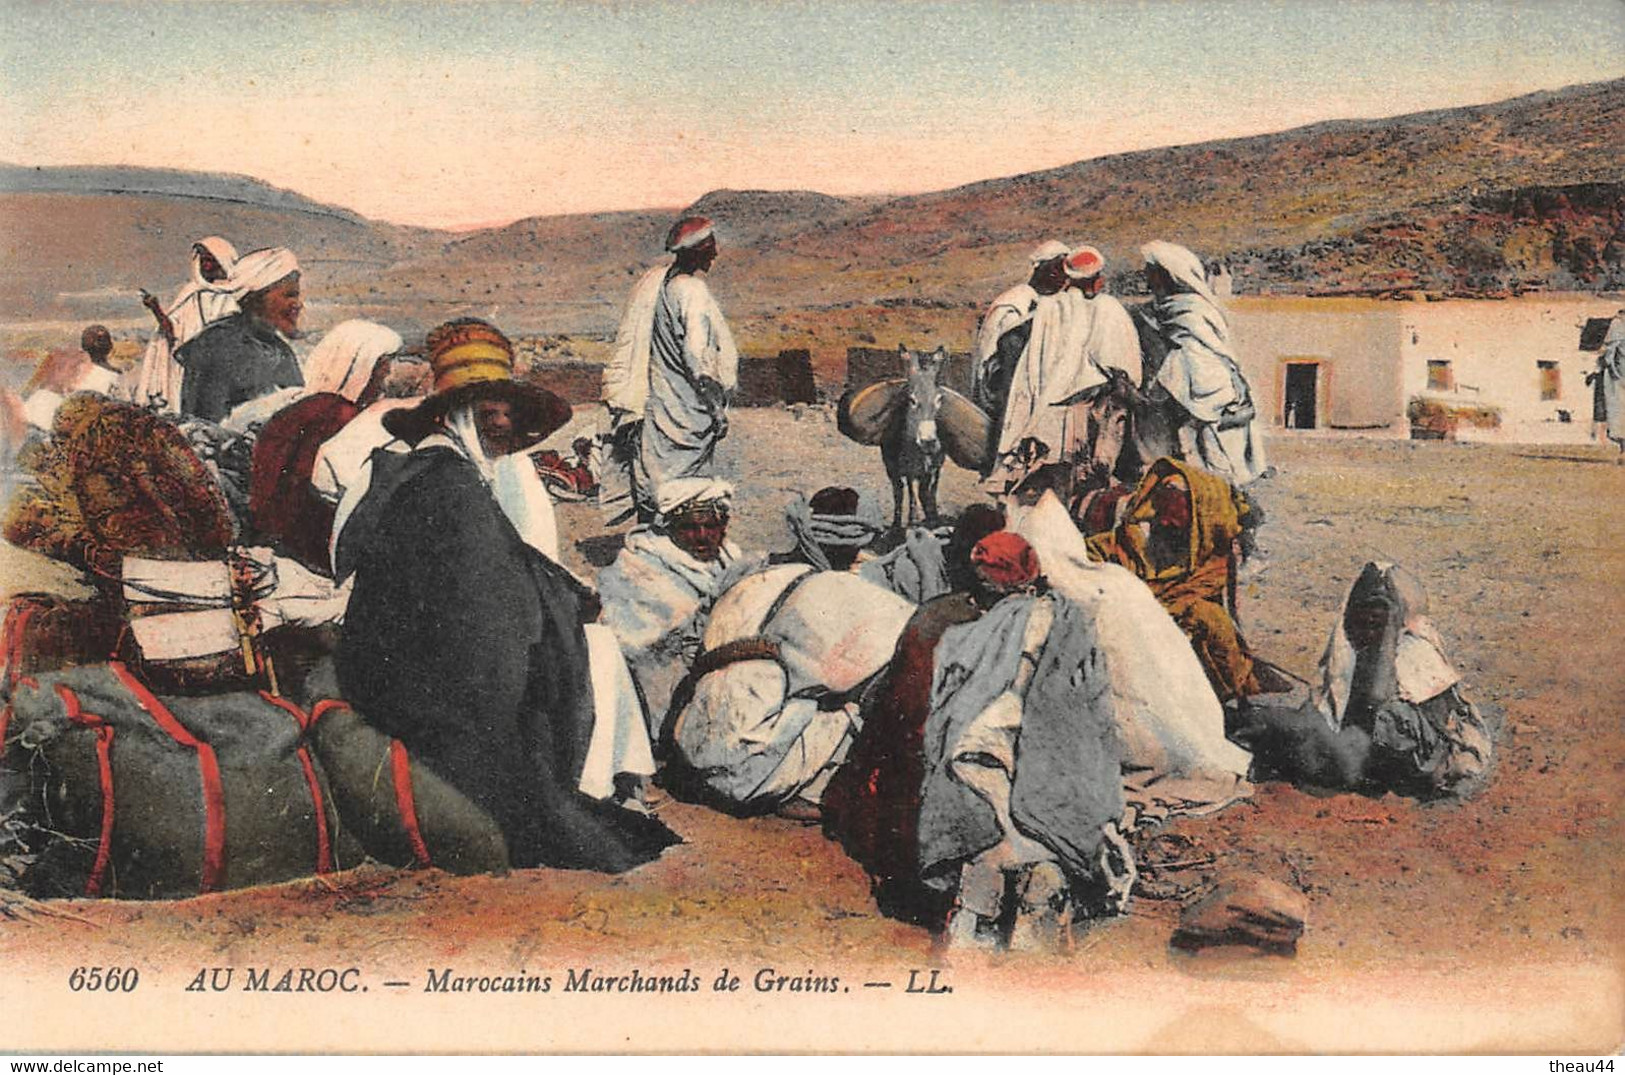 MAROC - Lot de 6 Cartes - Prisonniers Marocains, Convoi Militaire, Tir, Fantasia, Goumiers, Marchands, Camp Militaire